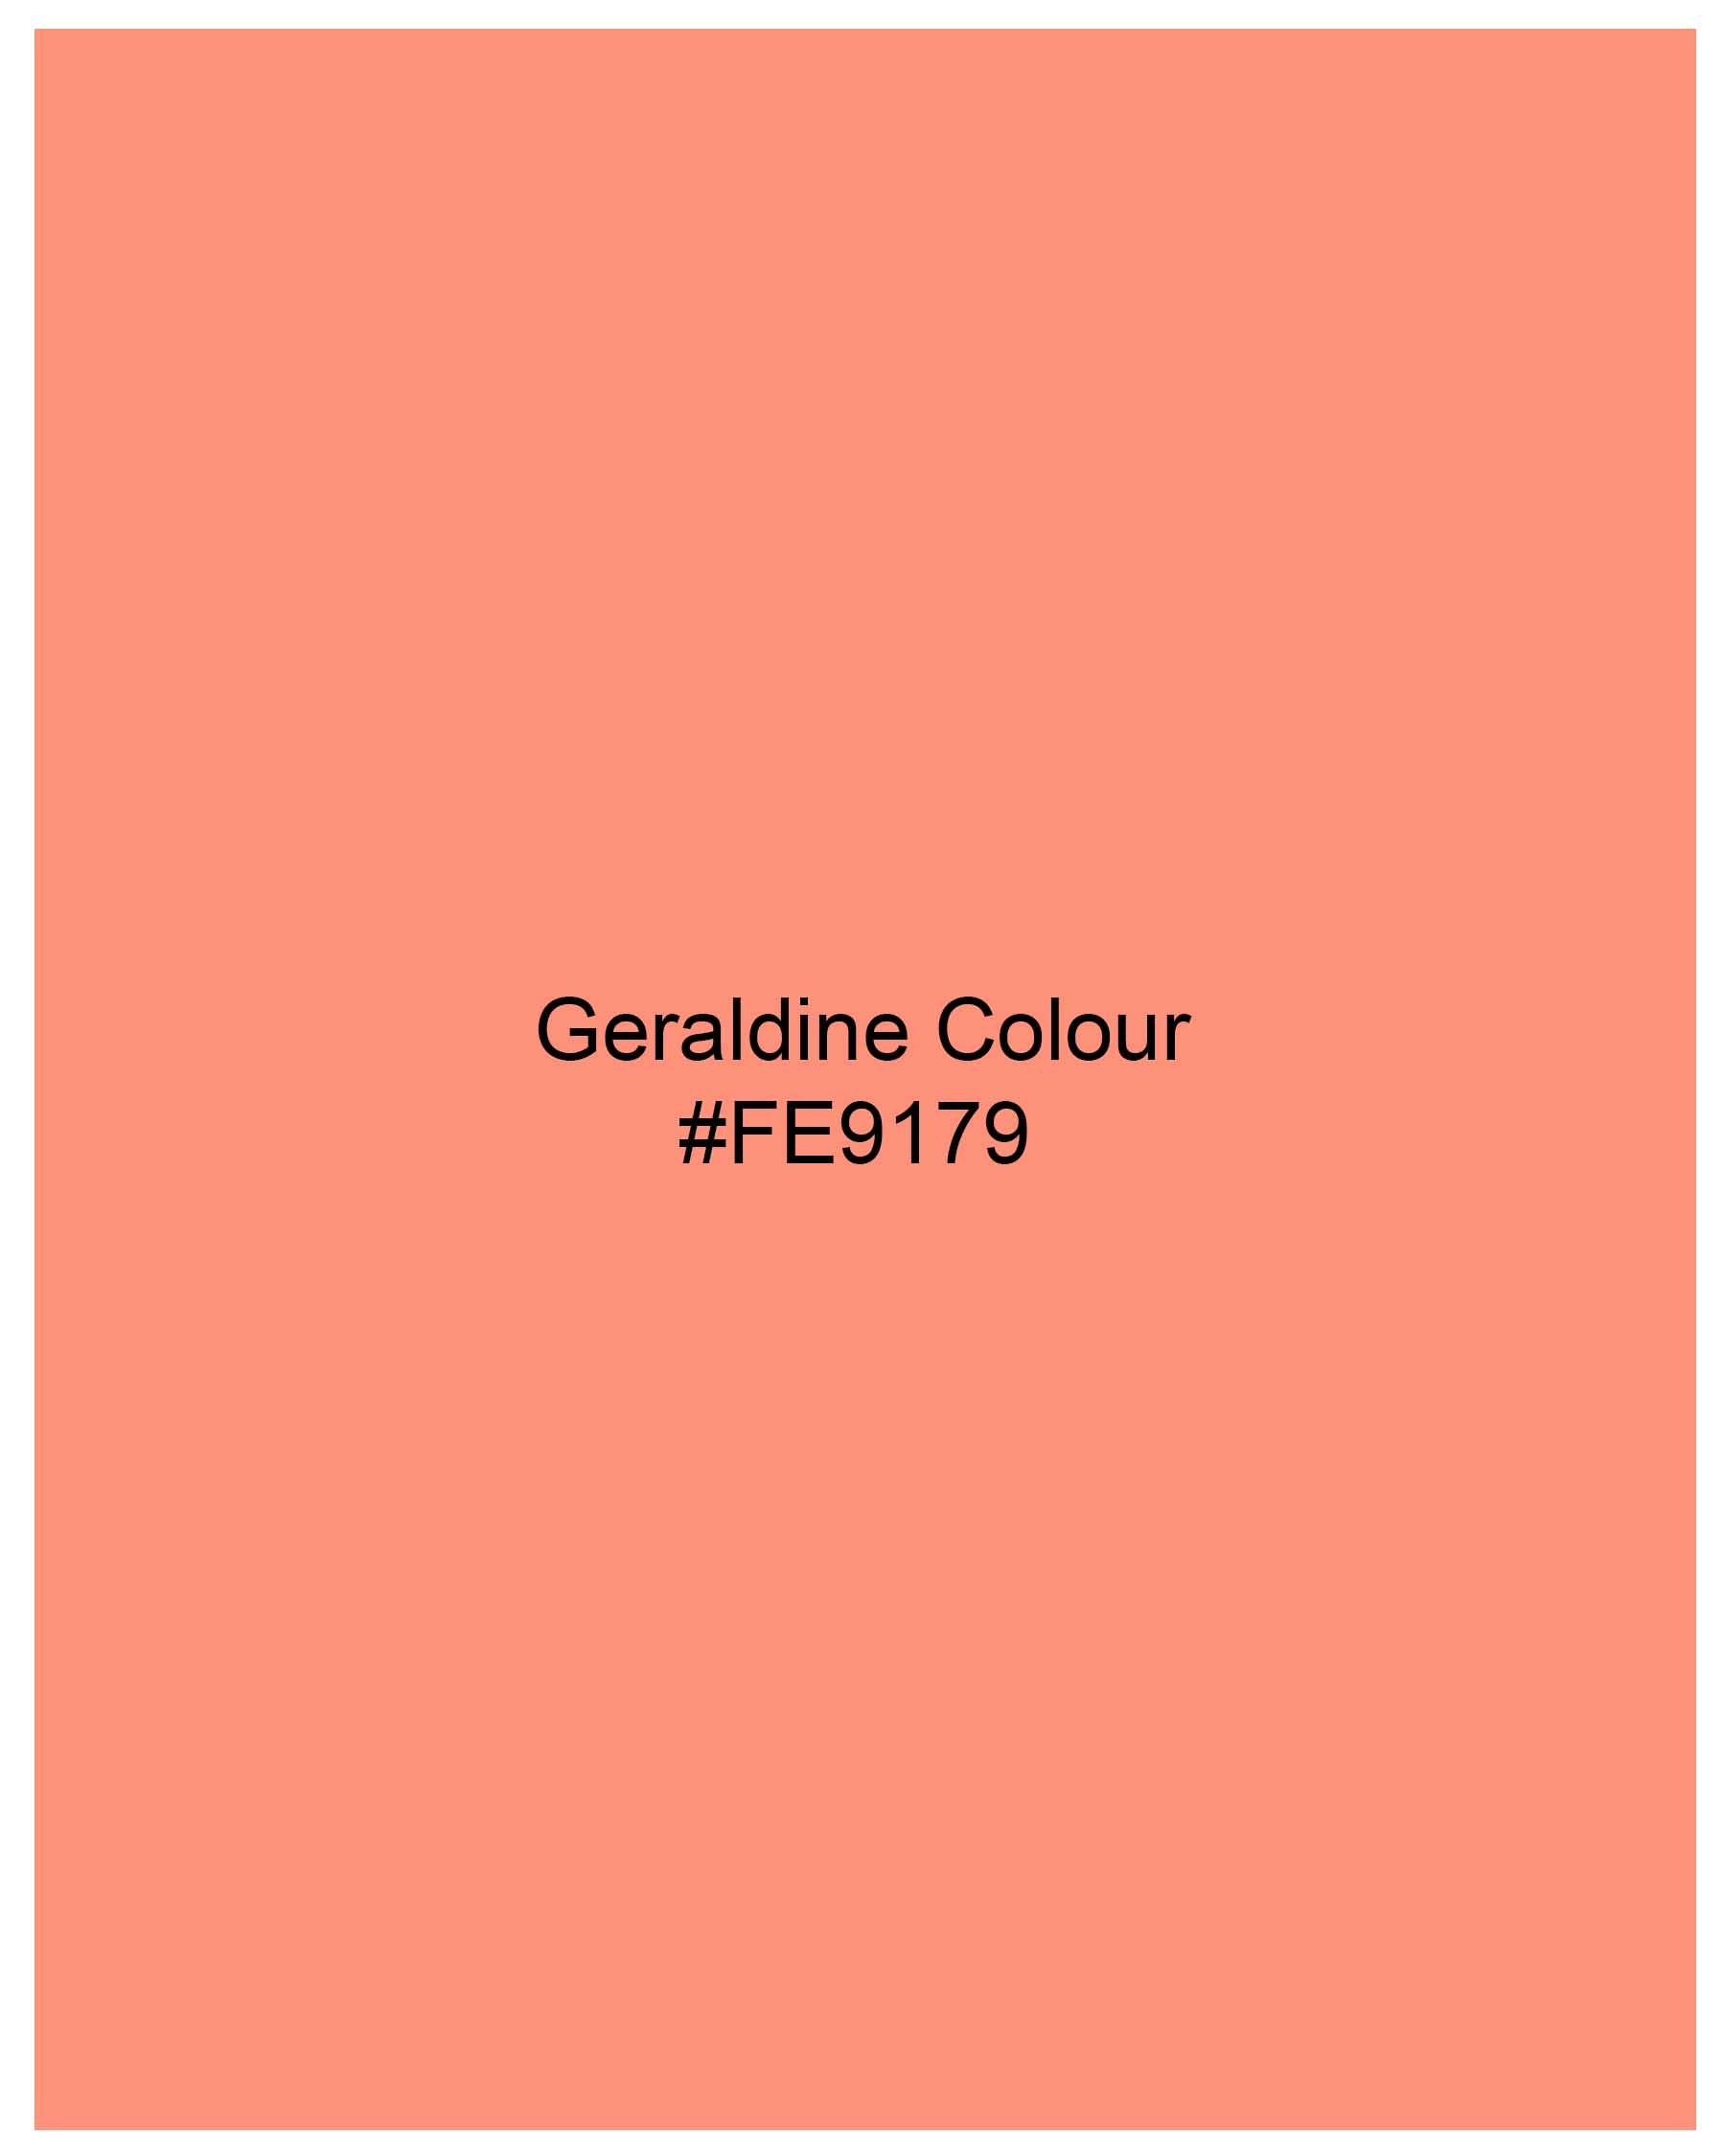 Geraldine Orange Dobby Textured Premium Giza Cotton Shirt 7978-38, 7978-H-38, 7978-39, 7978-H-39, 7978-40, 7978-H-40, 7978-42, 7978-H-42, 7978-44, 7978-H-44, 7978-46, 7978-H-46, 7978-48, 7978-H-48, 7978-50, 7978-H-50, 7978-52, 7978-H-52